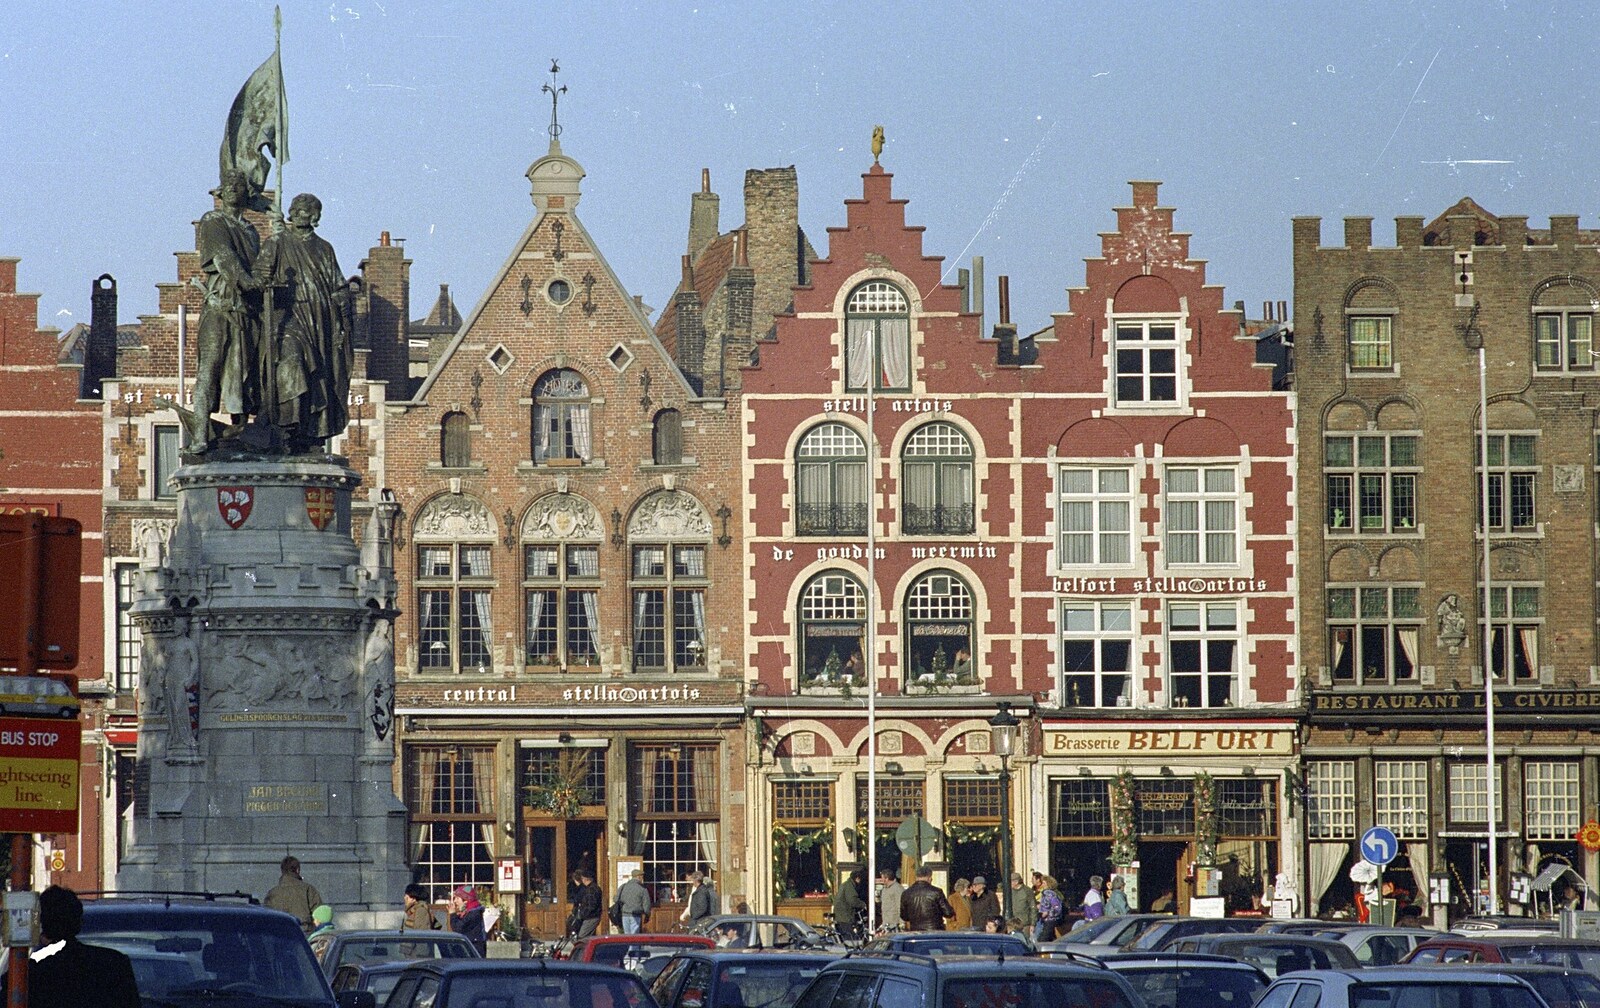 Bruges cafés from Clays Does Bruges, Belgium - 19th December 1992